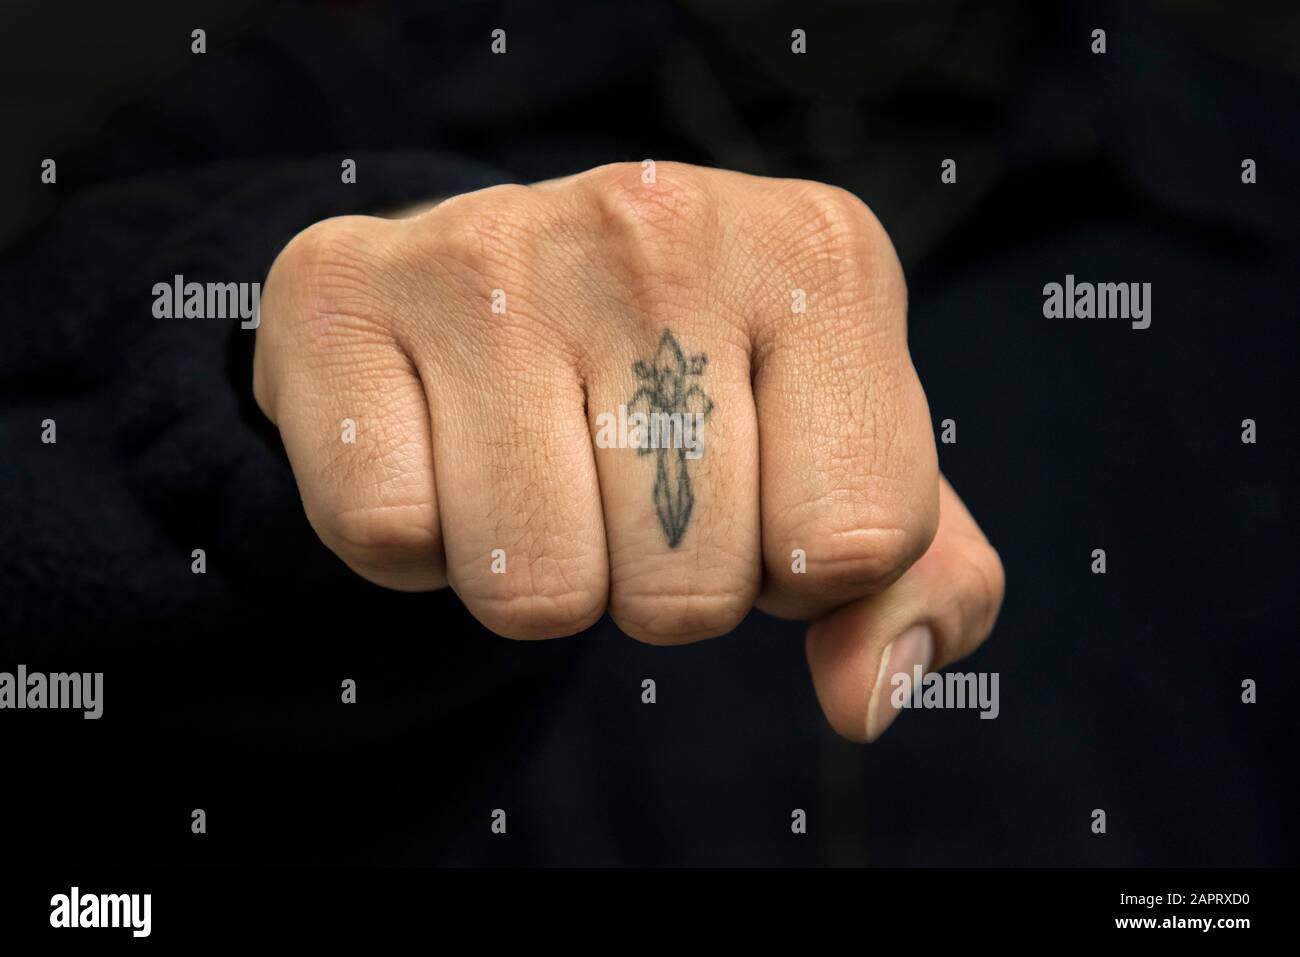 Tatuaje de dedo imágenes alta resolución - Alamy